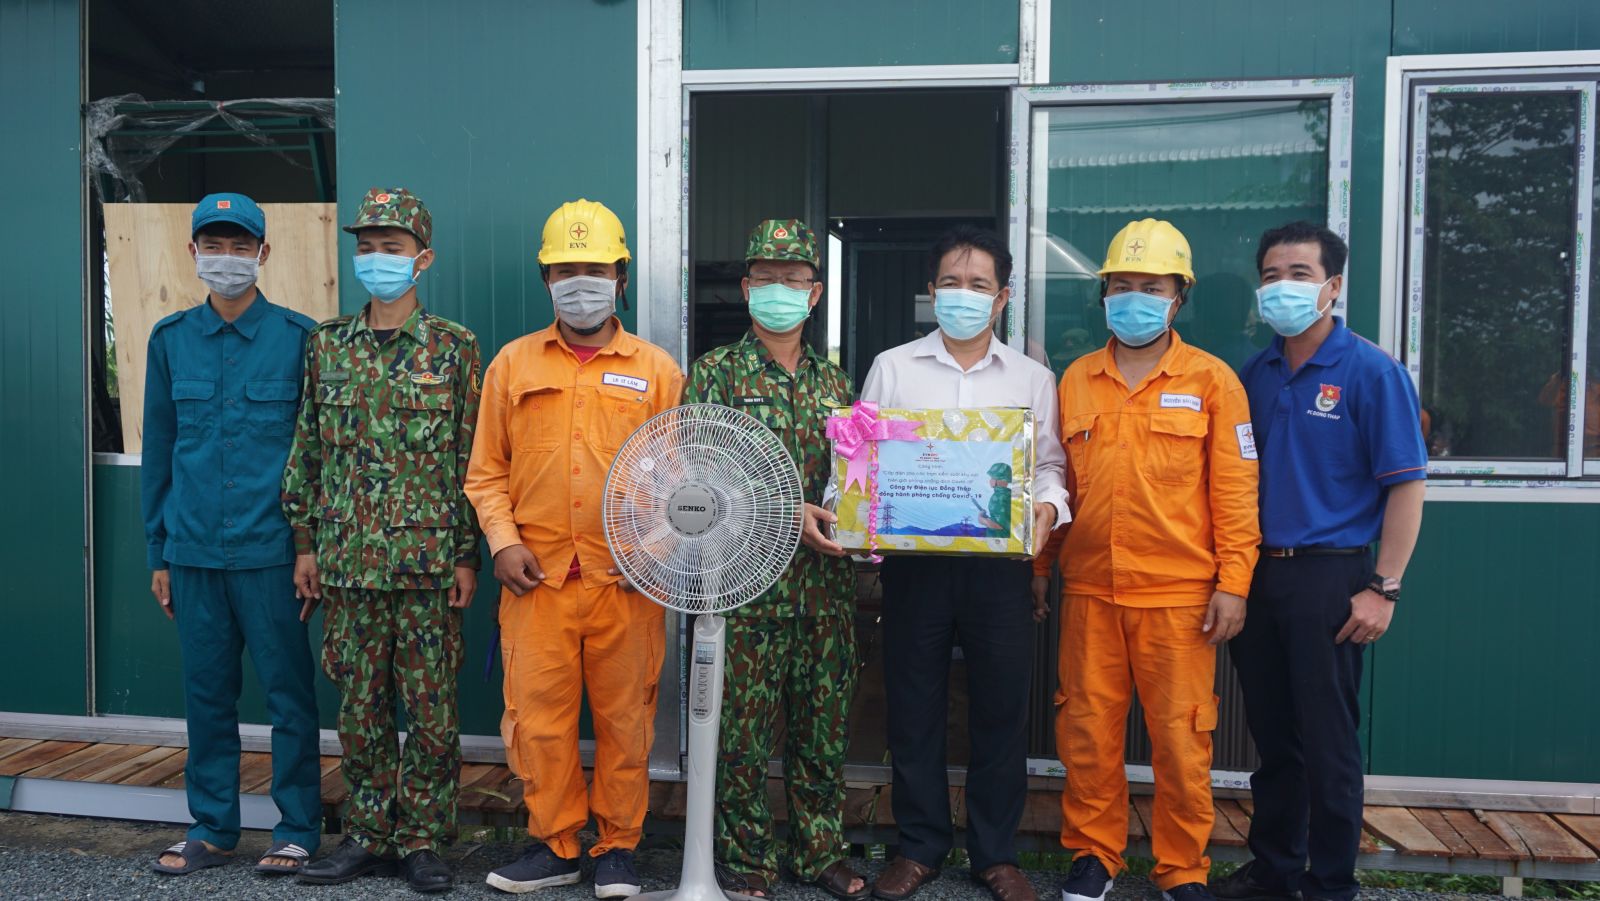 Điện lực Đồng Tháp tiếp sức “lá chắn thép” chống dịch COVID-19 tại huyện Hồng Ngự, tỉnh Đồng Tháp